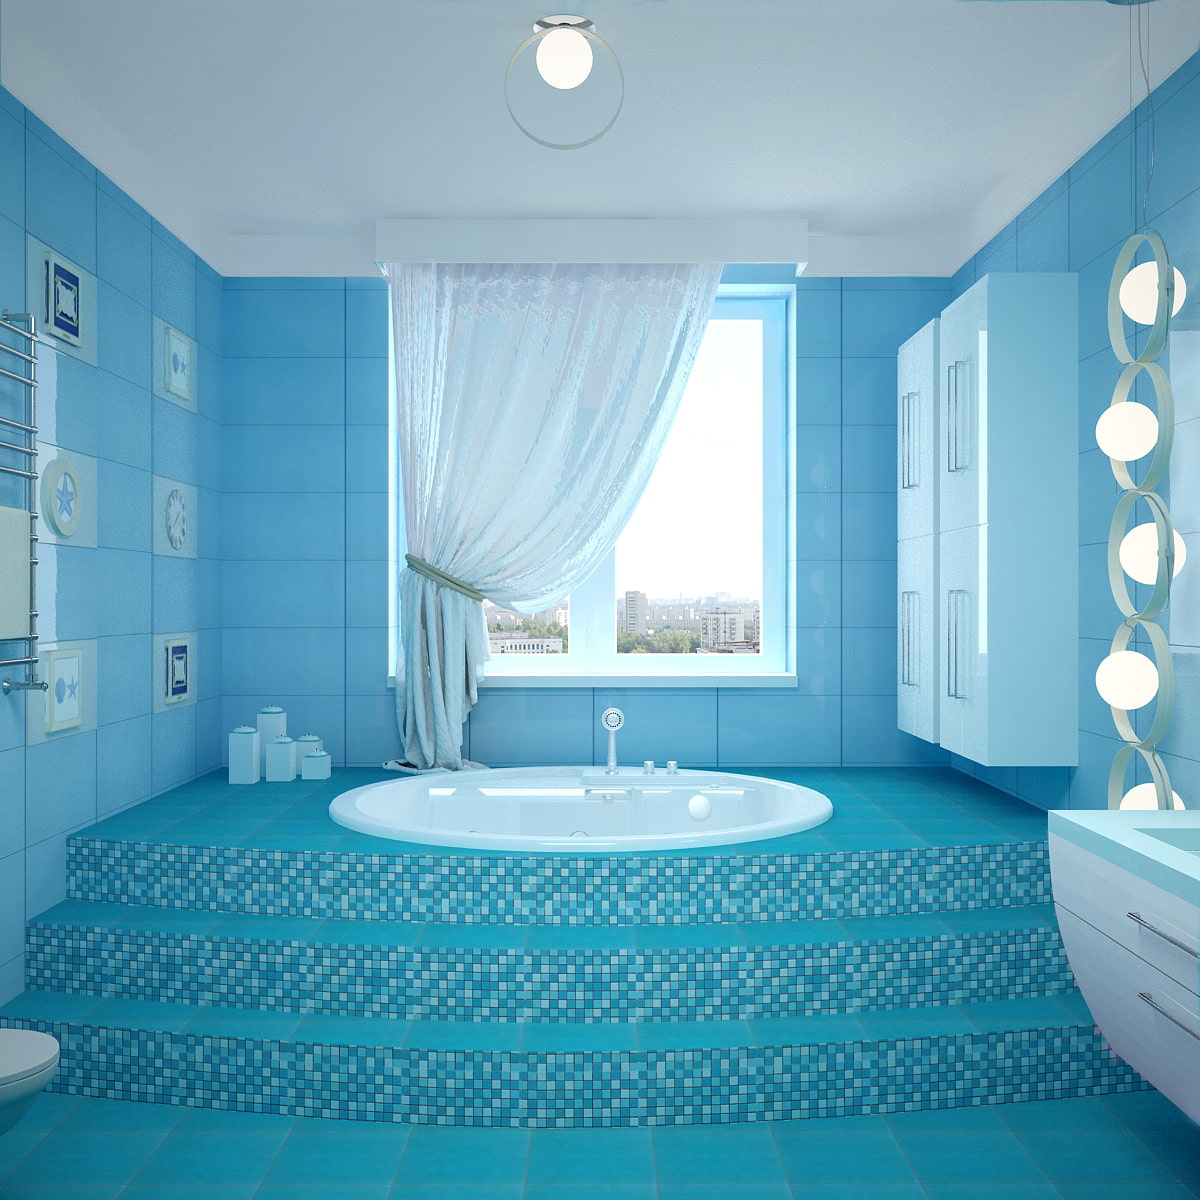 Синяя ванная комната: 75 идей дизайна (фото)